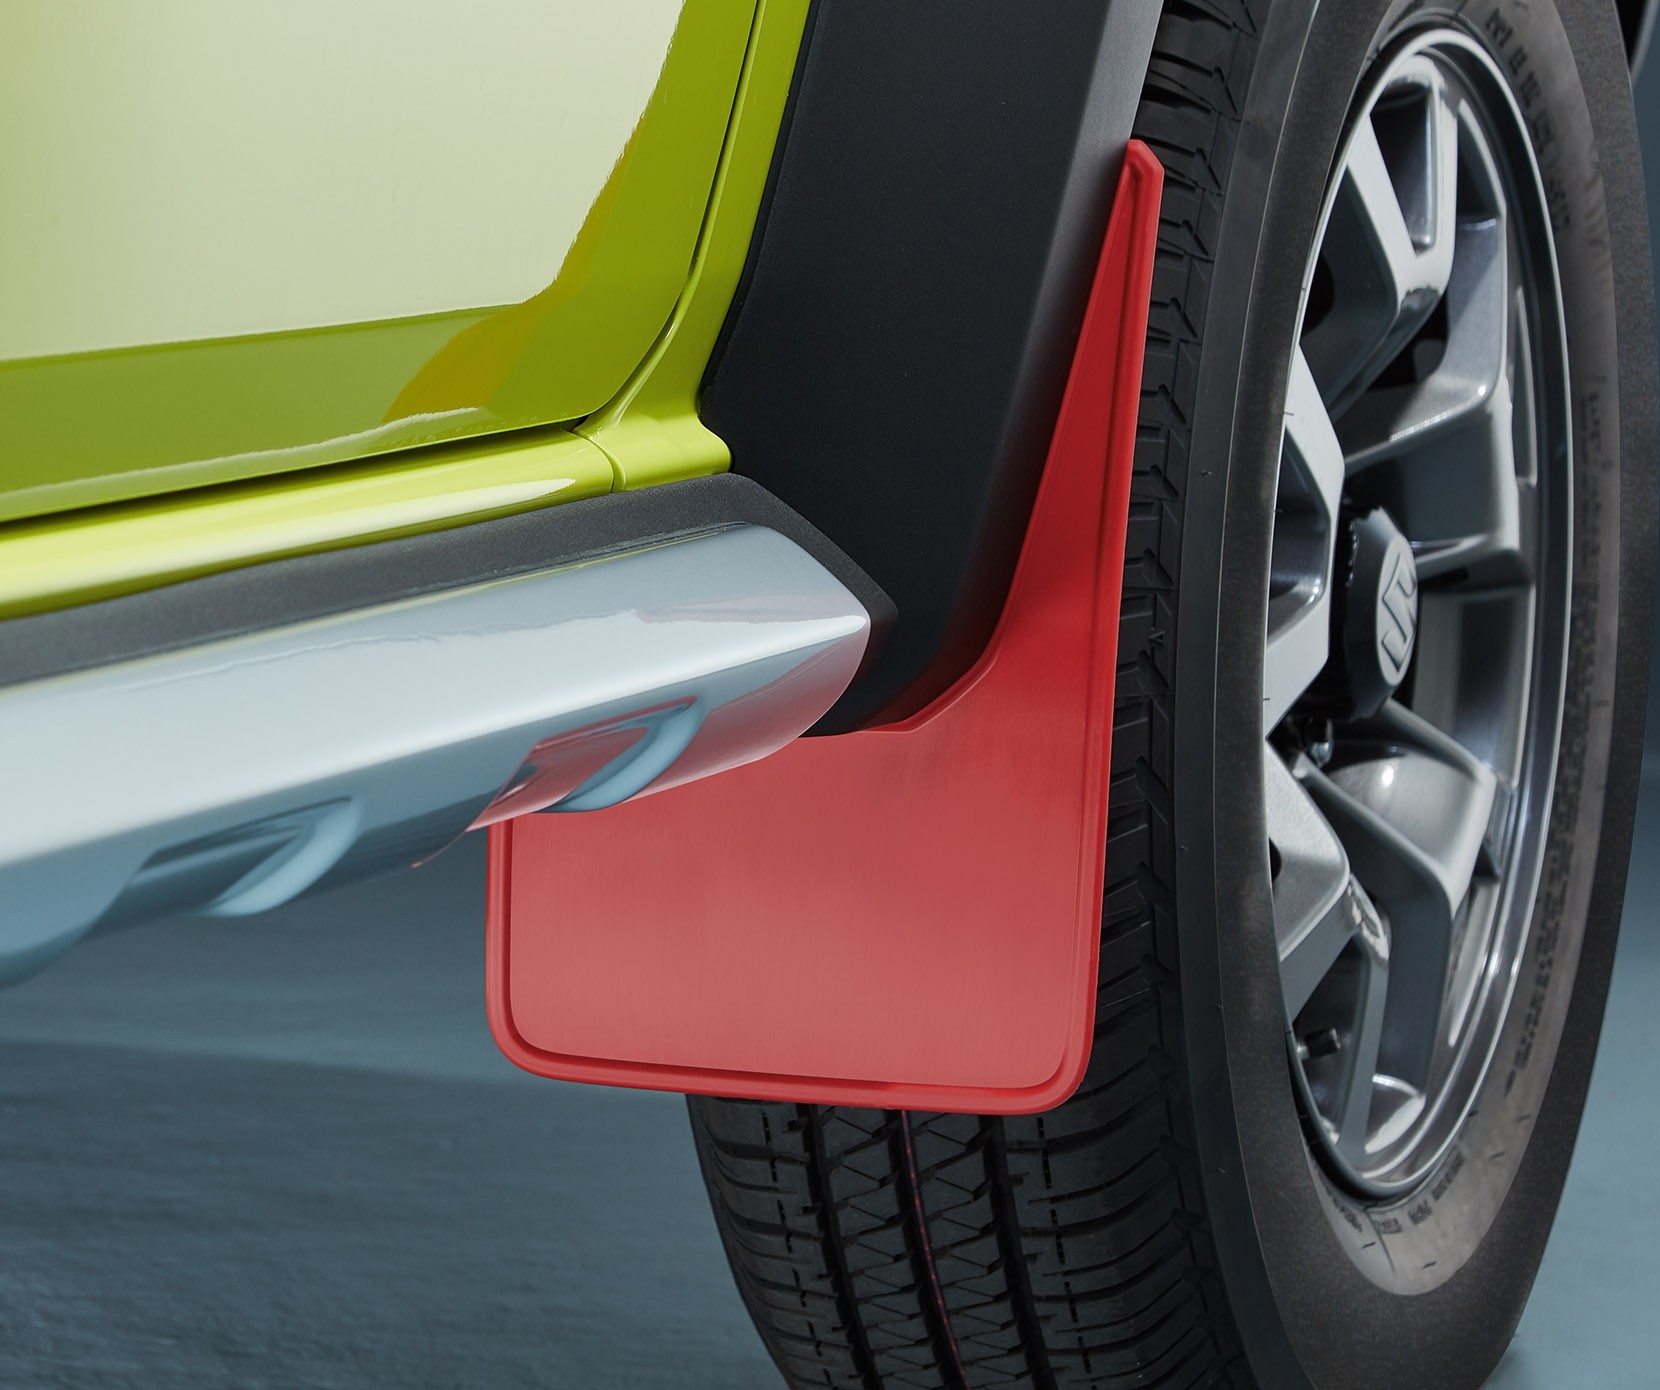 couleur E-8.5mm large taille 20 \ Lames d'essuie-glace de voiture, Insert  de bande en caoutchouc, recharge pour Suzuki SX4 SWIFT Alto Liane Grand  Vitara Jimny s-cross Swift